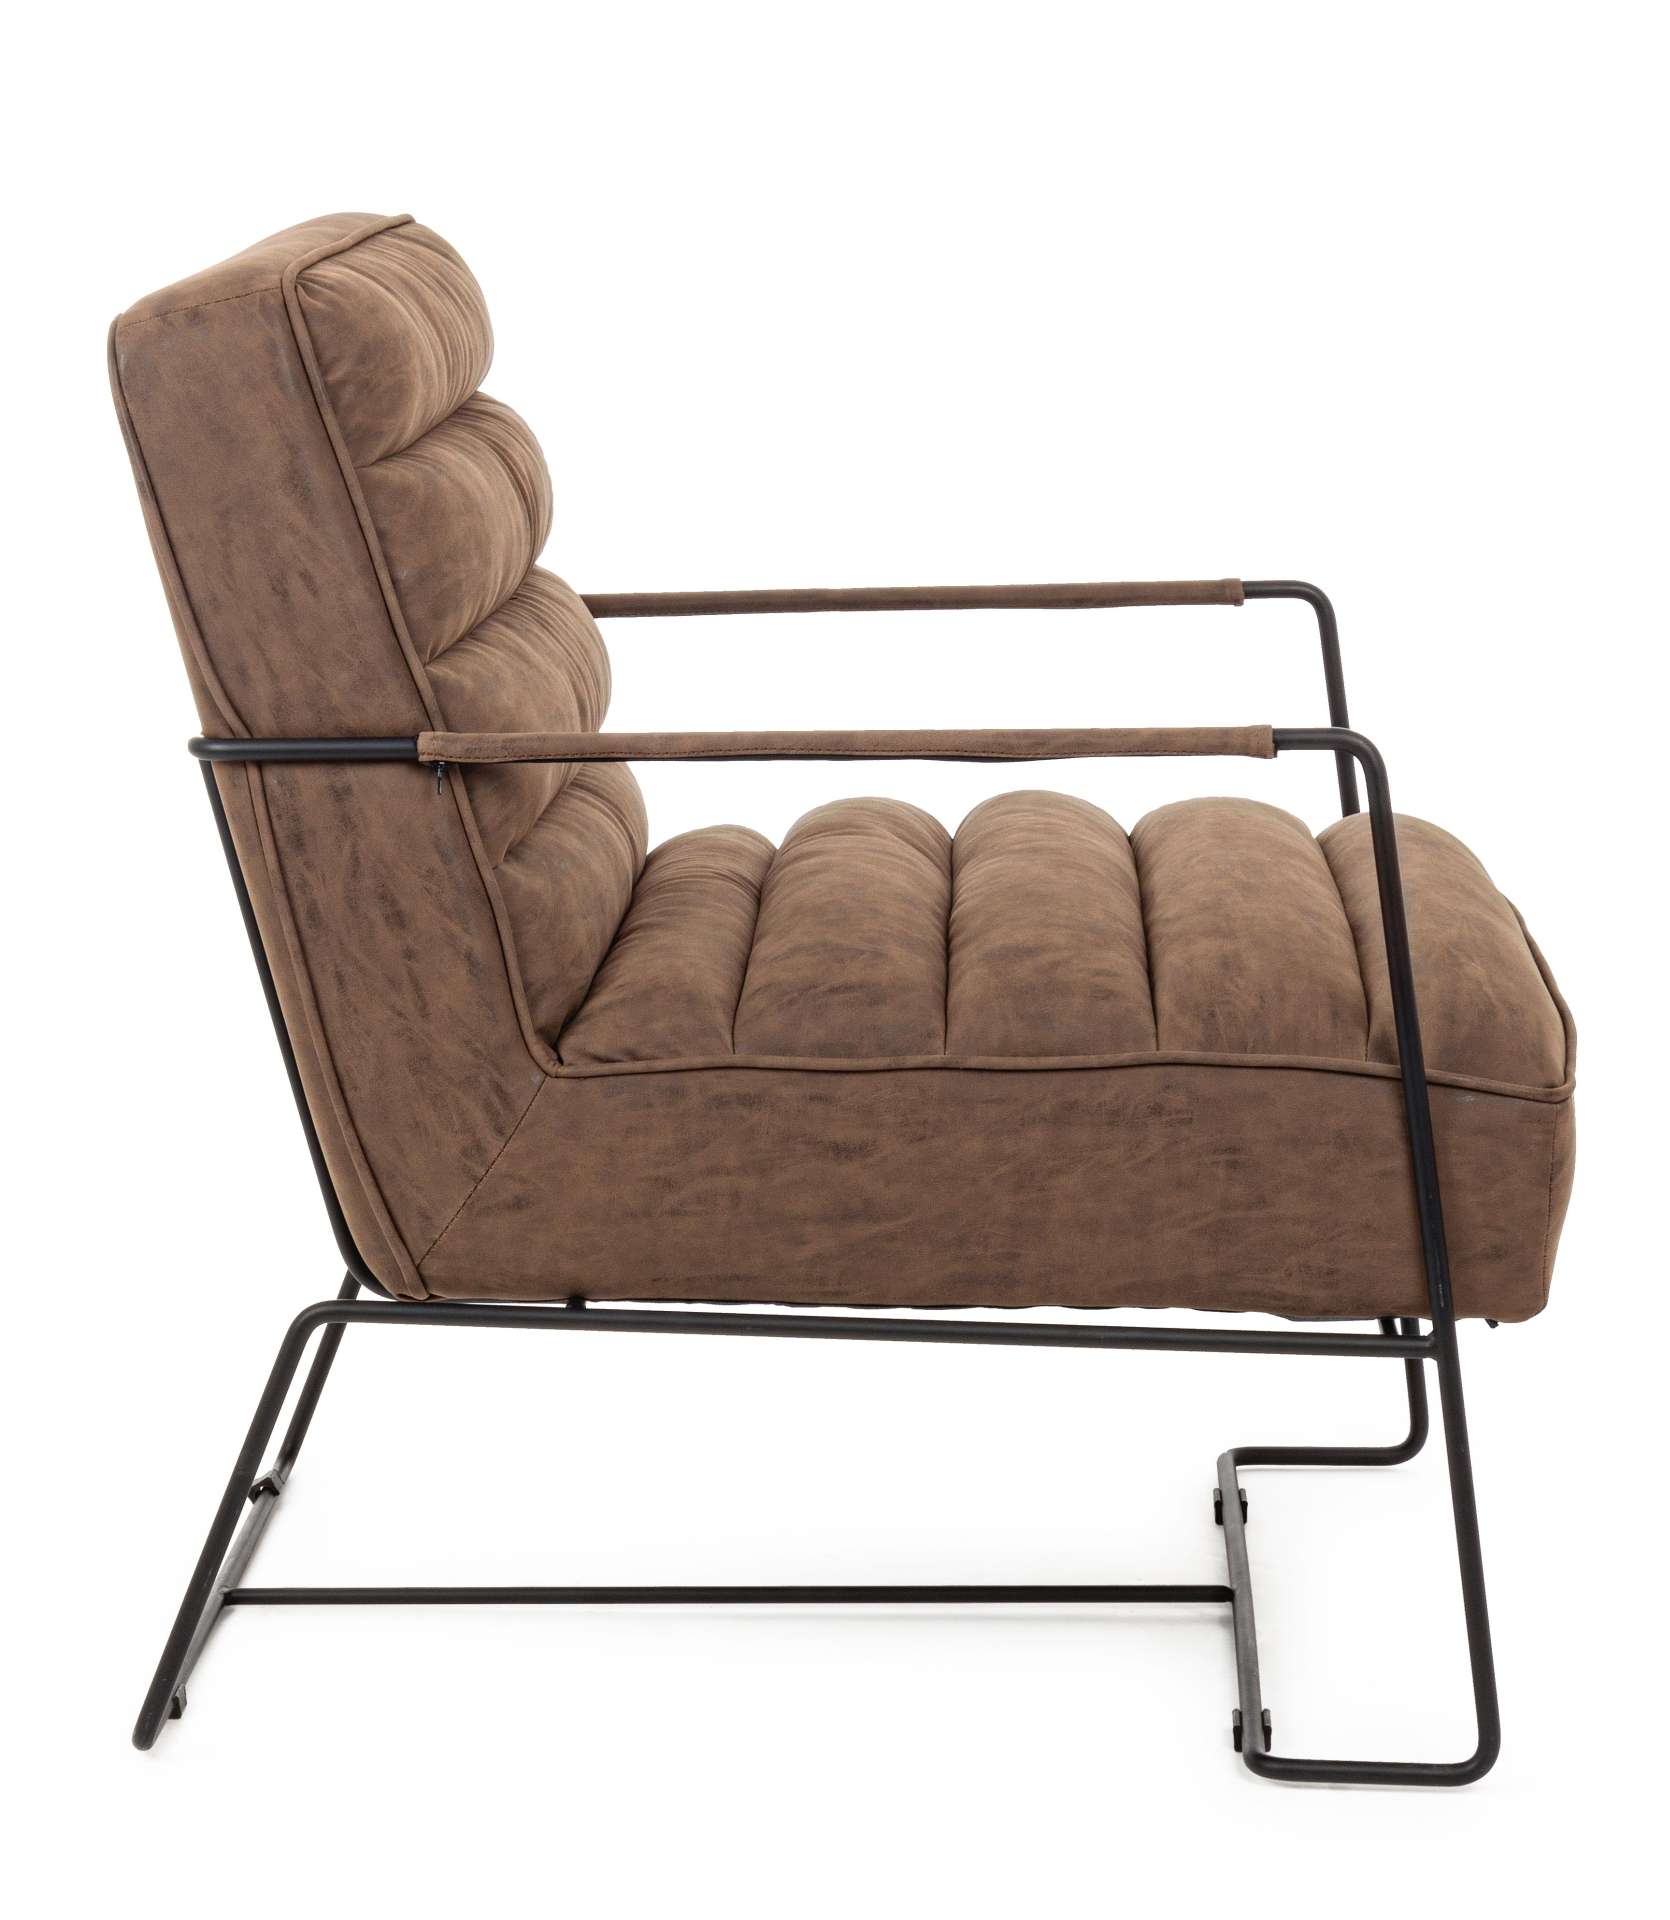 Der Sessel Brianna überzeugt mit seinem klassischen Design. Gefertigt wurde er aus Kunstleder, welches einen braunen Farbton besitzt. Das Gestell ist aus Metall und hat eine schwarze Farbe. Der Sessel besitzt eine Sitzhöhe von 45 cm. Die Breite beträgt 63